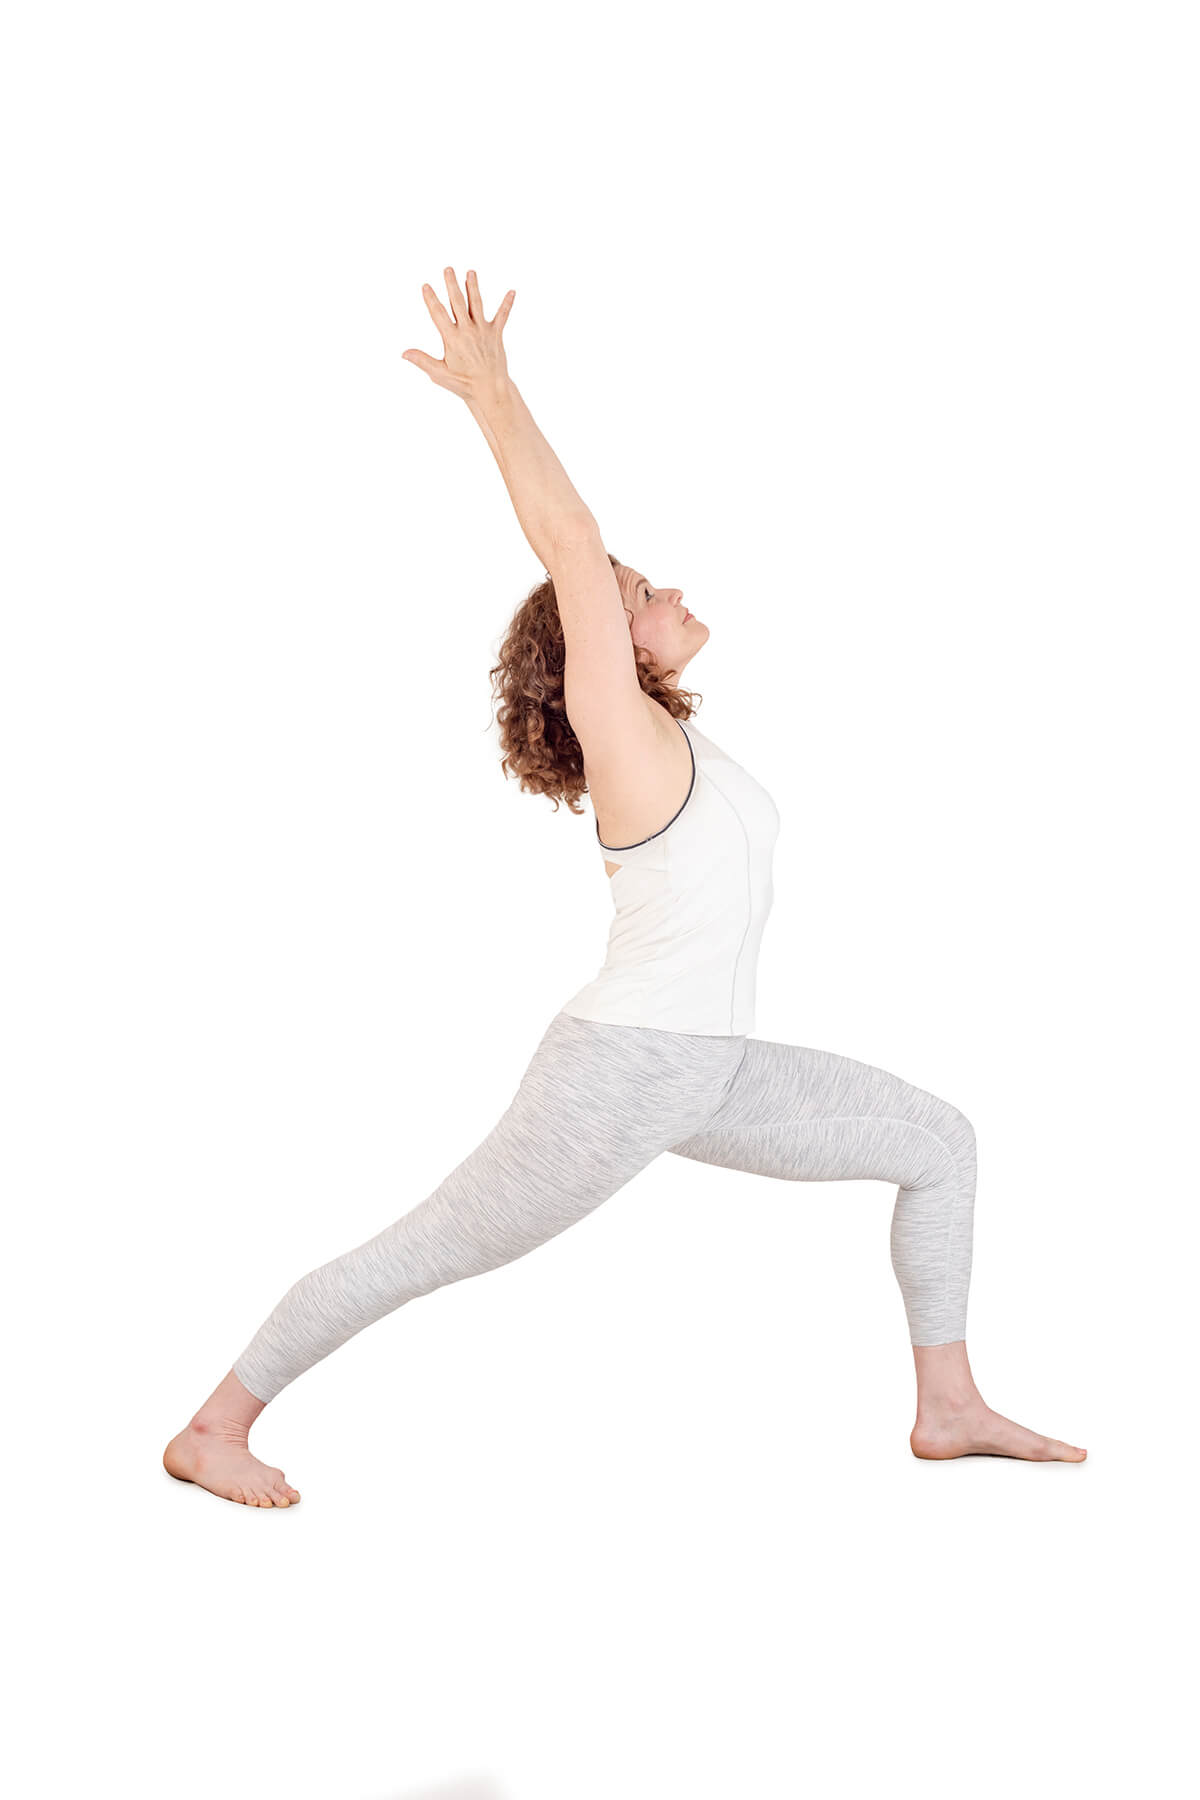 6 Yoga Warrior Pose Variations for Inner Strength - KiraGrace